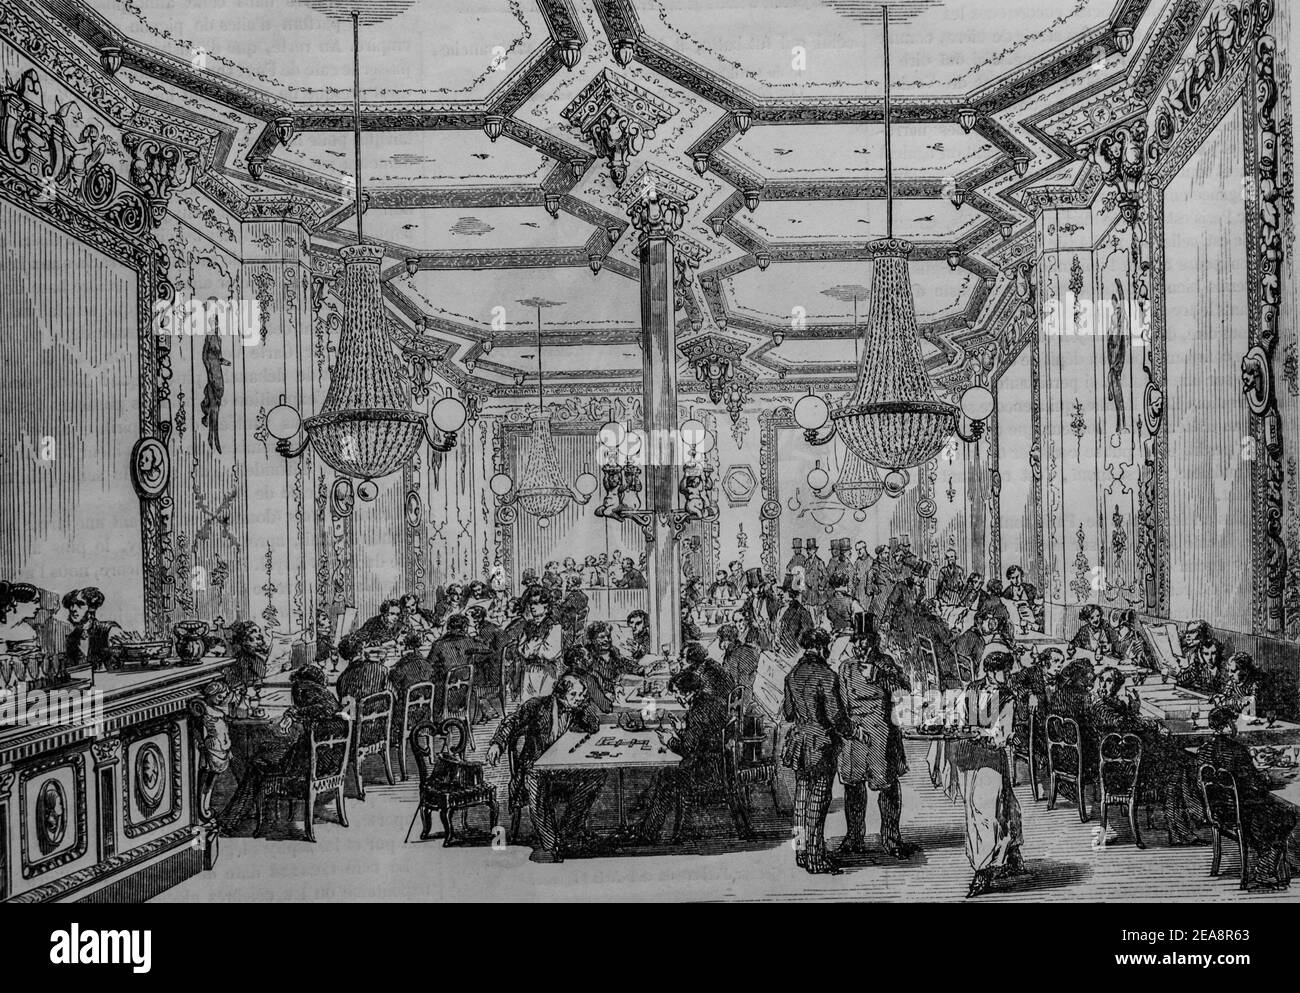 café pierron, tableau de paris par edmond texier, éditeur paulin et le chevalier 1852 Banque D'Images